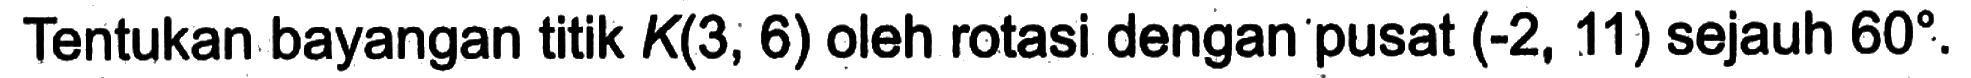 Tentukan bayangan titik K(3, 6) oleh rotasi dengan pusat (-2, 11) sejauh 60